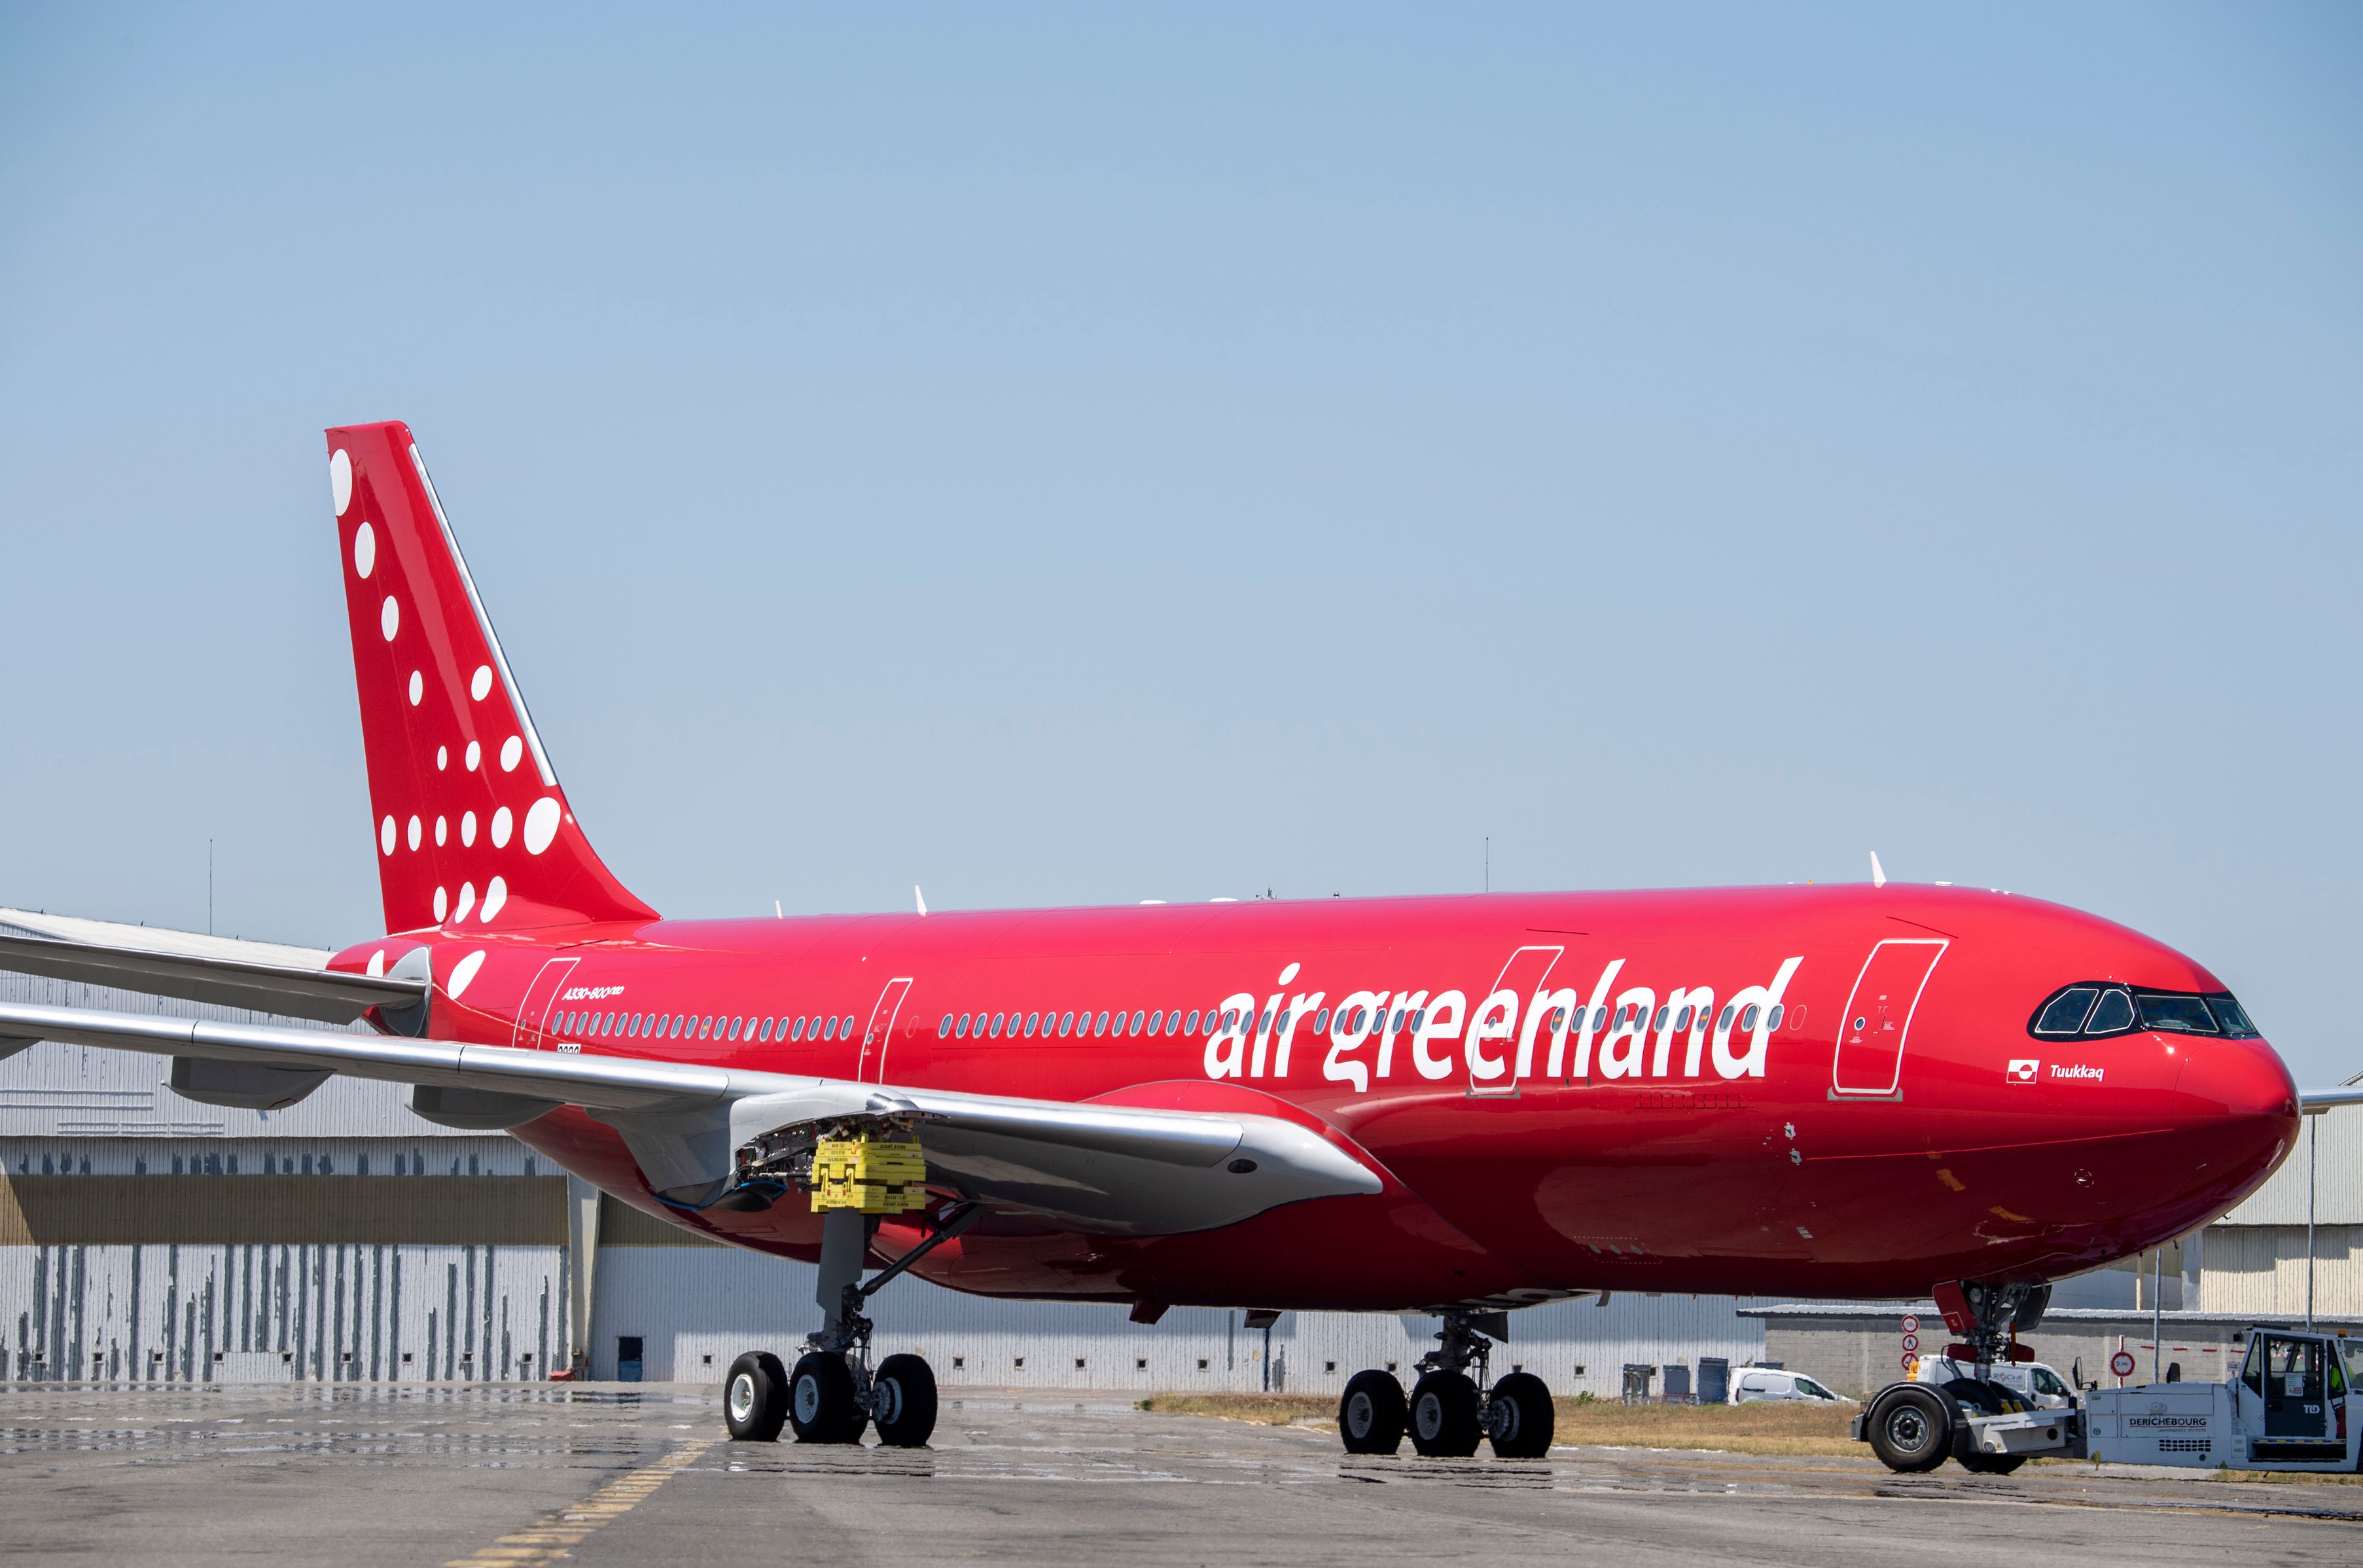 Air Greenland A330neo